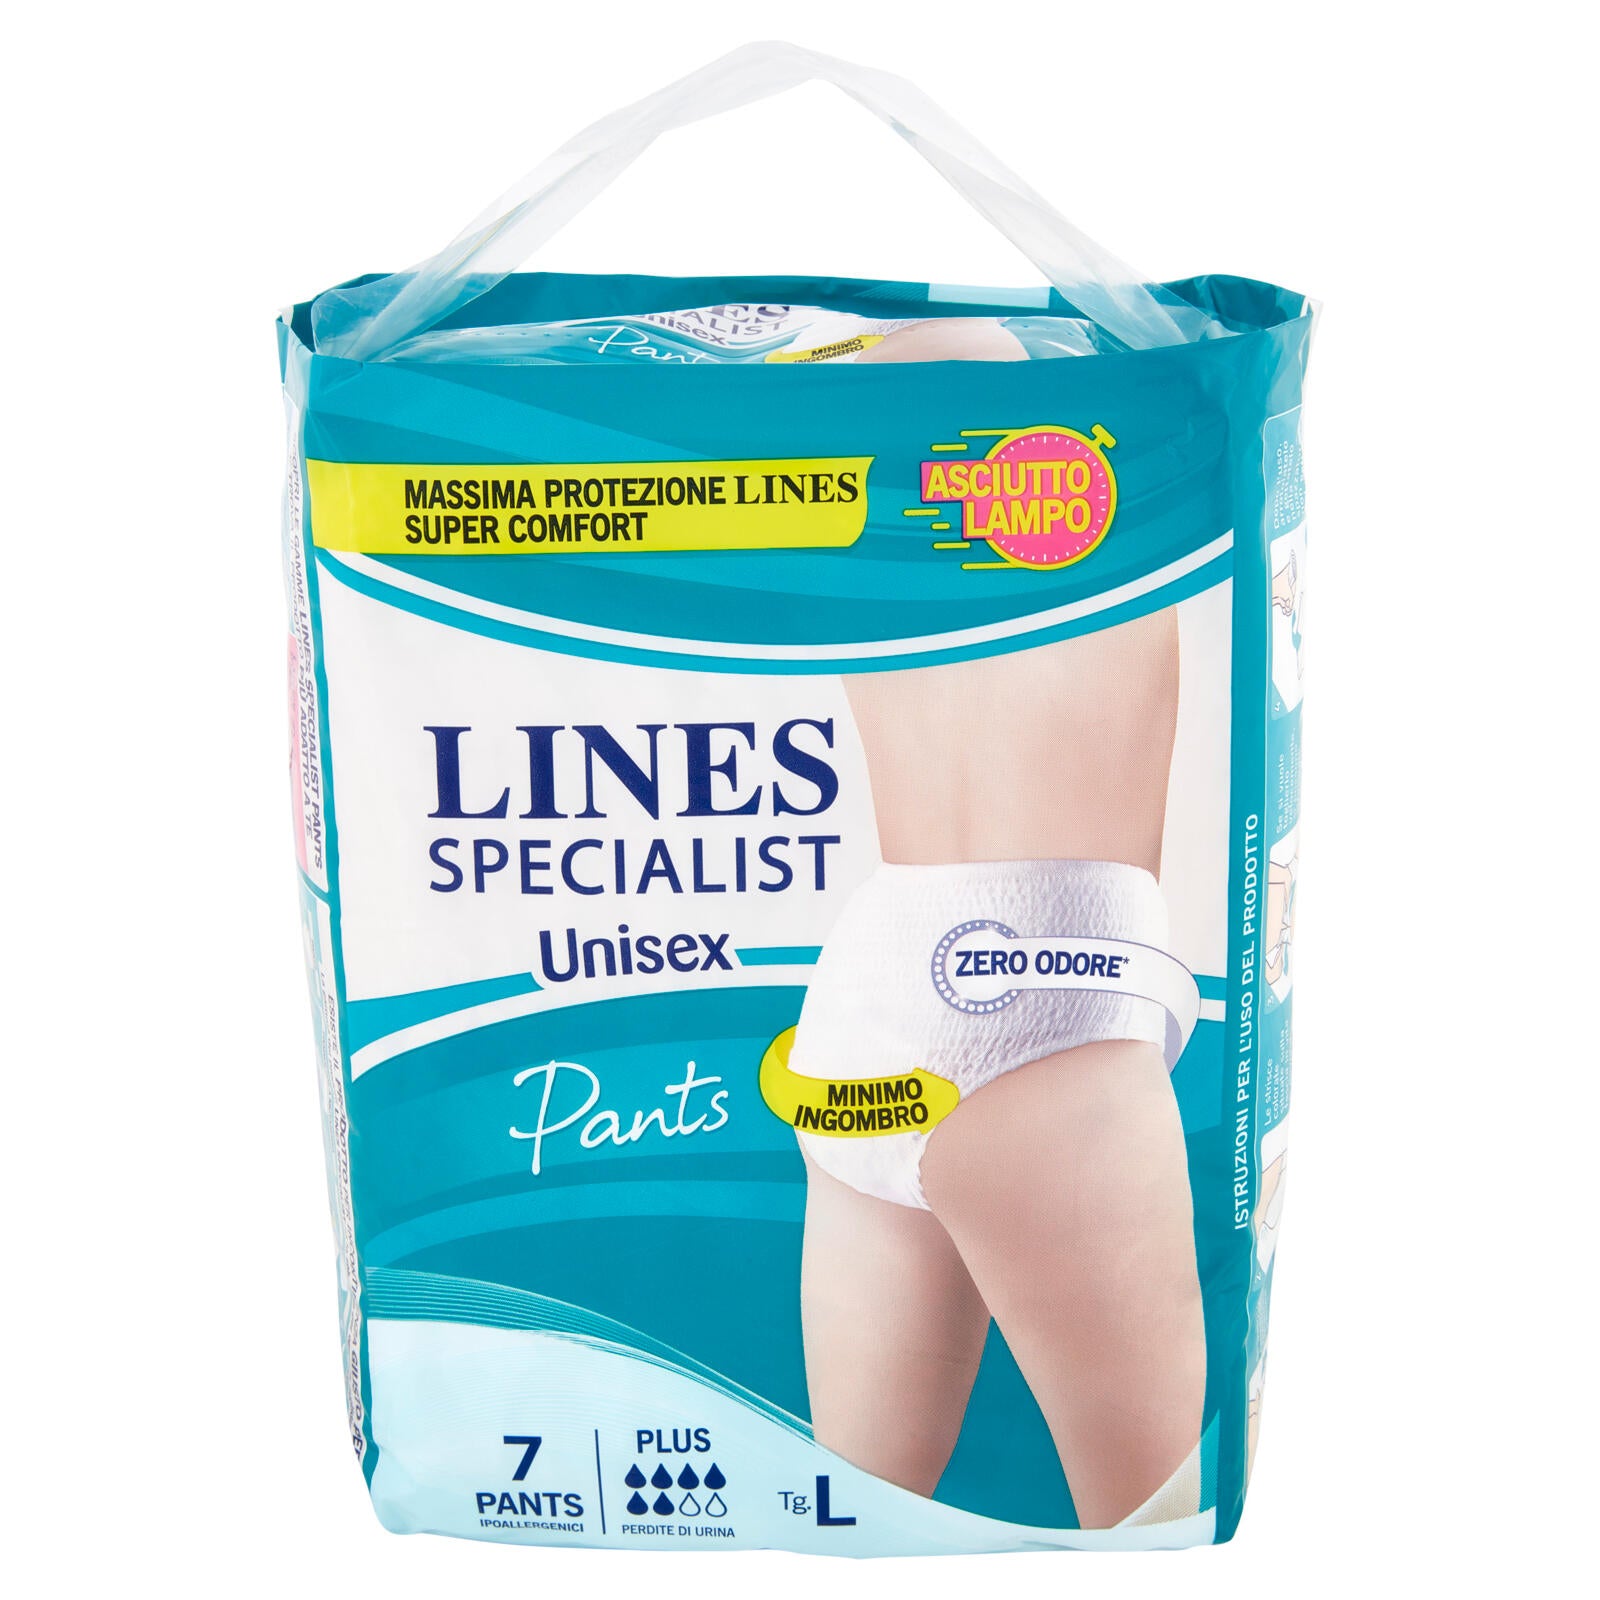 Lines Specialist Unisex Plus Pants Ipoallergenici Tg.L 7 pz